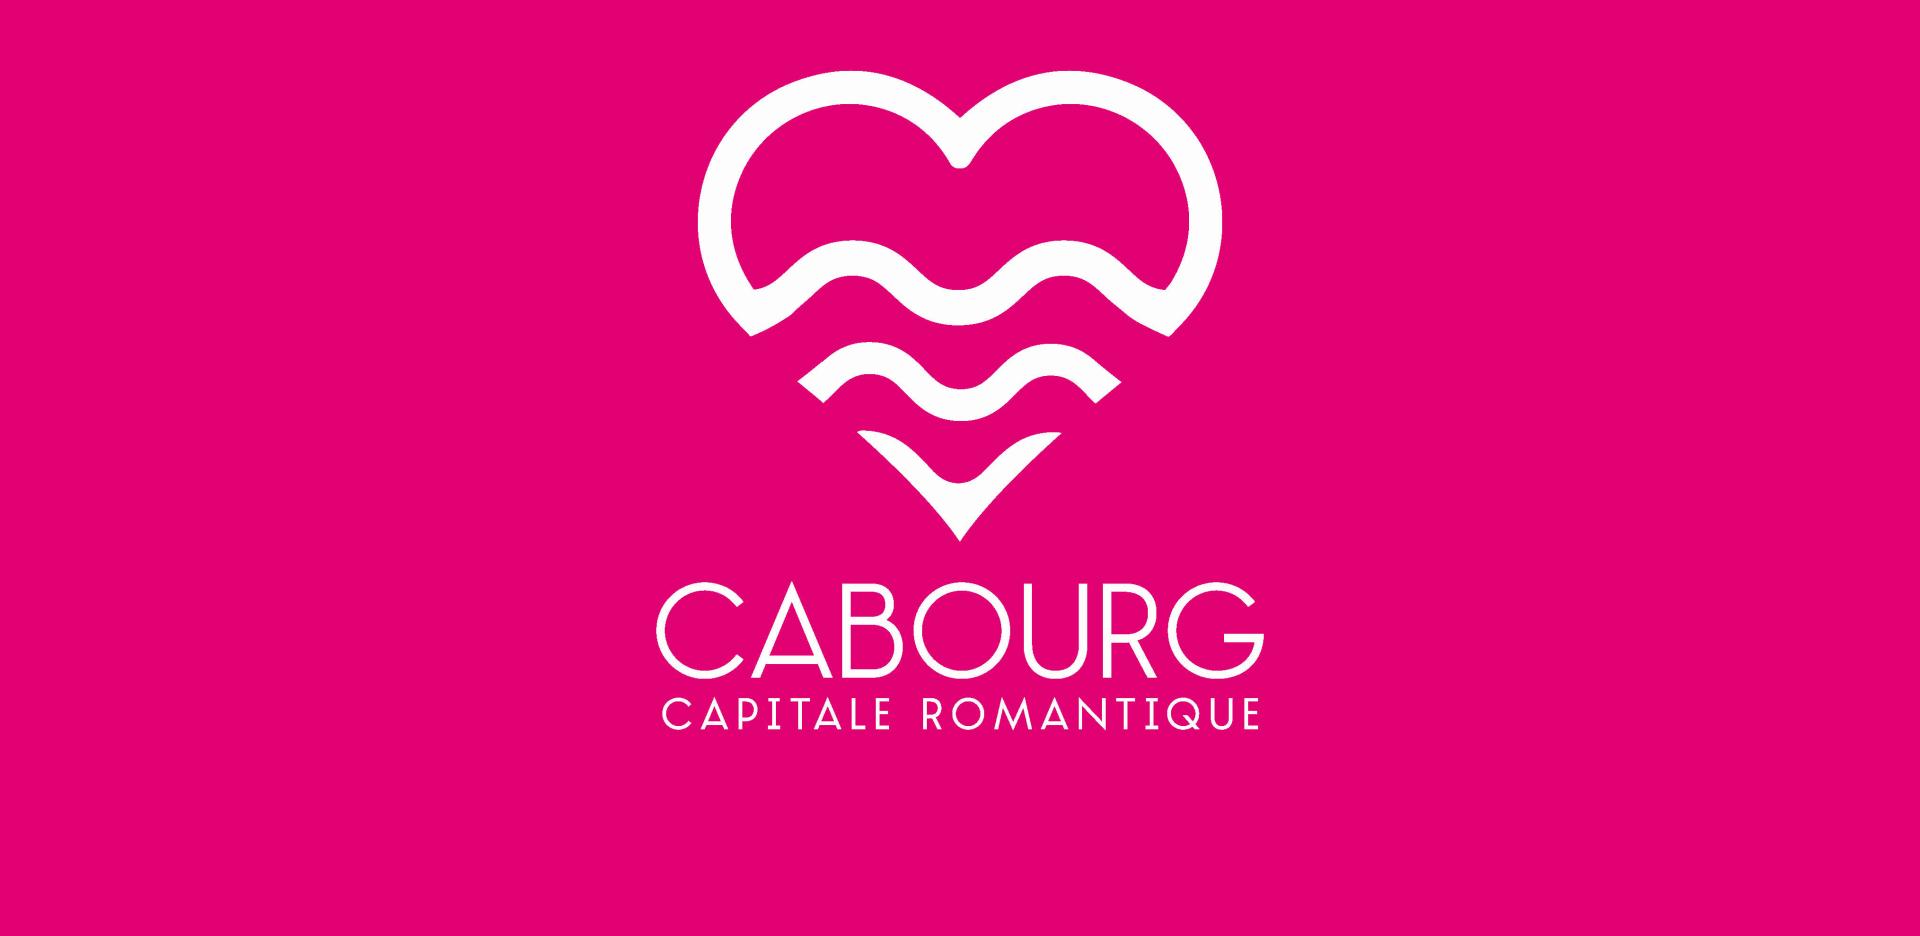 Cabourg, capitale romantique